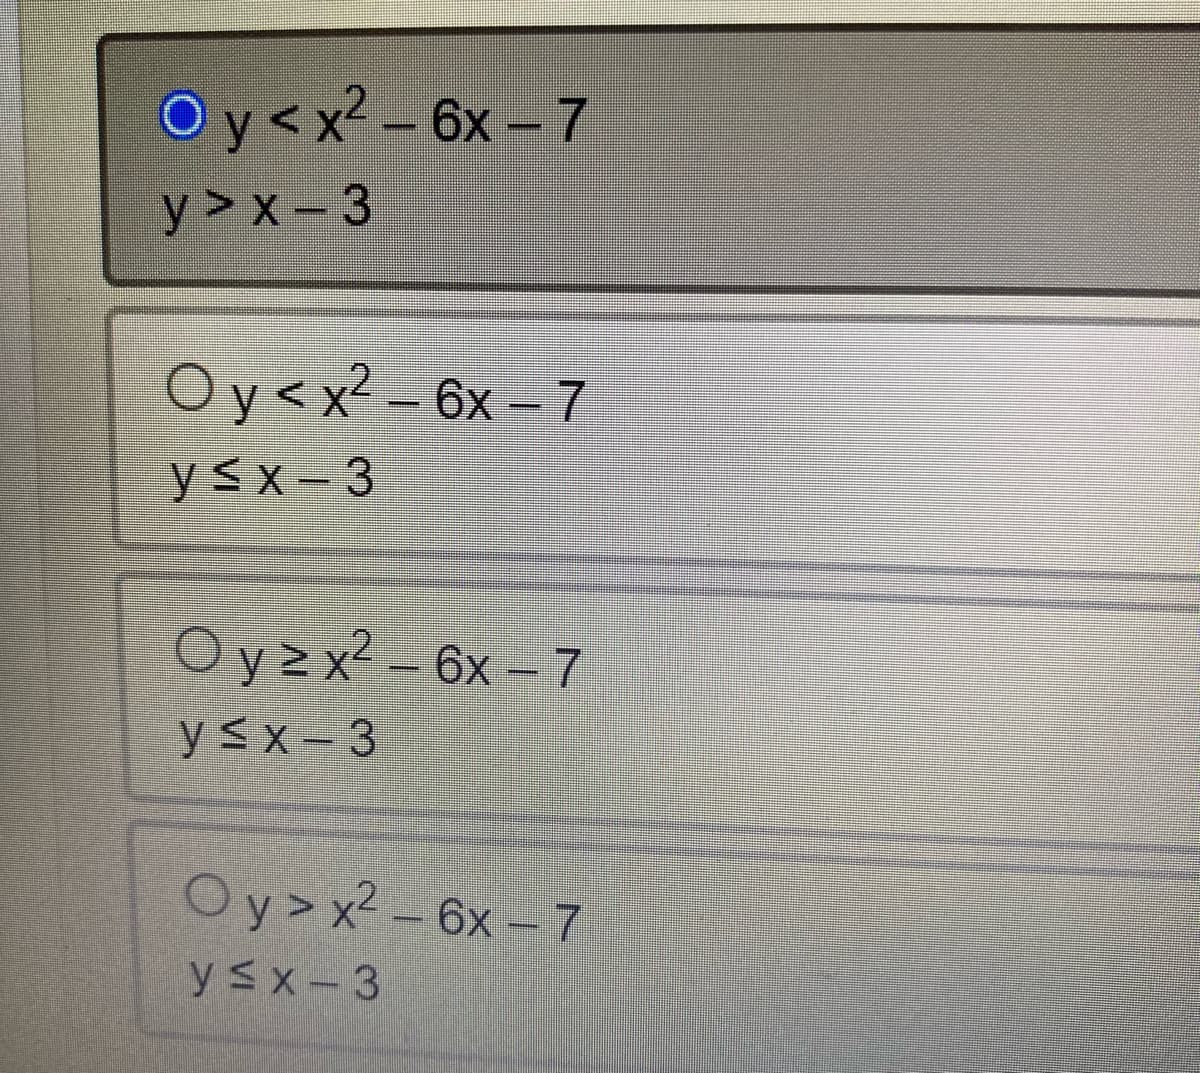 Oy< x² - 6x - 7
y>x-3
Oy<x2-6x-7
y≤x 3
Oy≥x² - 6x - 7
y≤x-3
Oy>x²-6x-7
y≤x-3